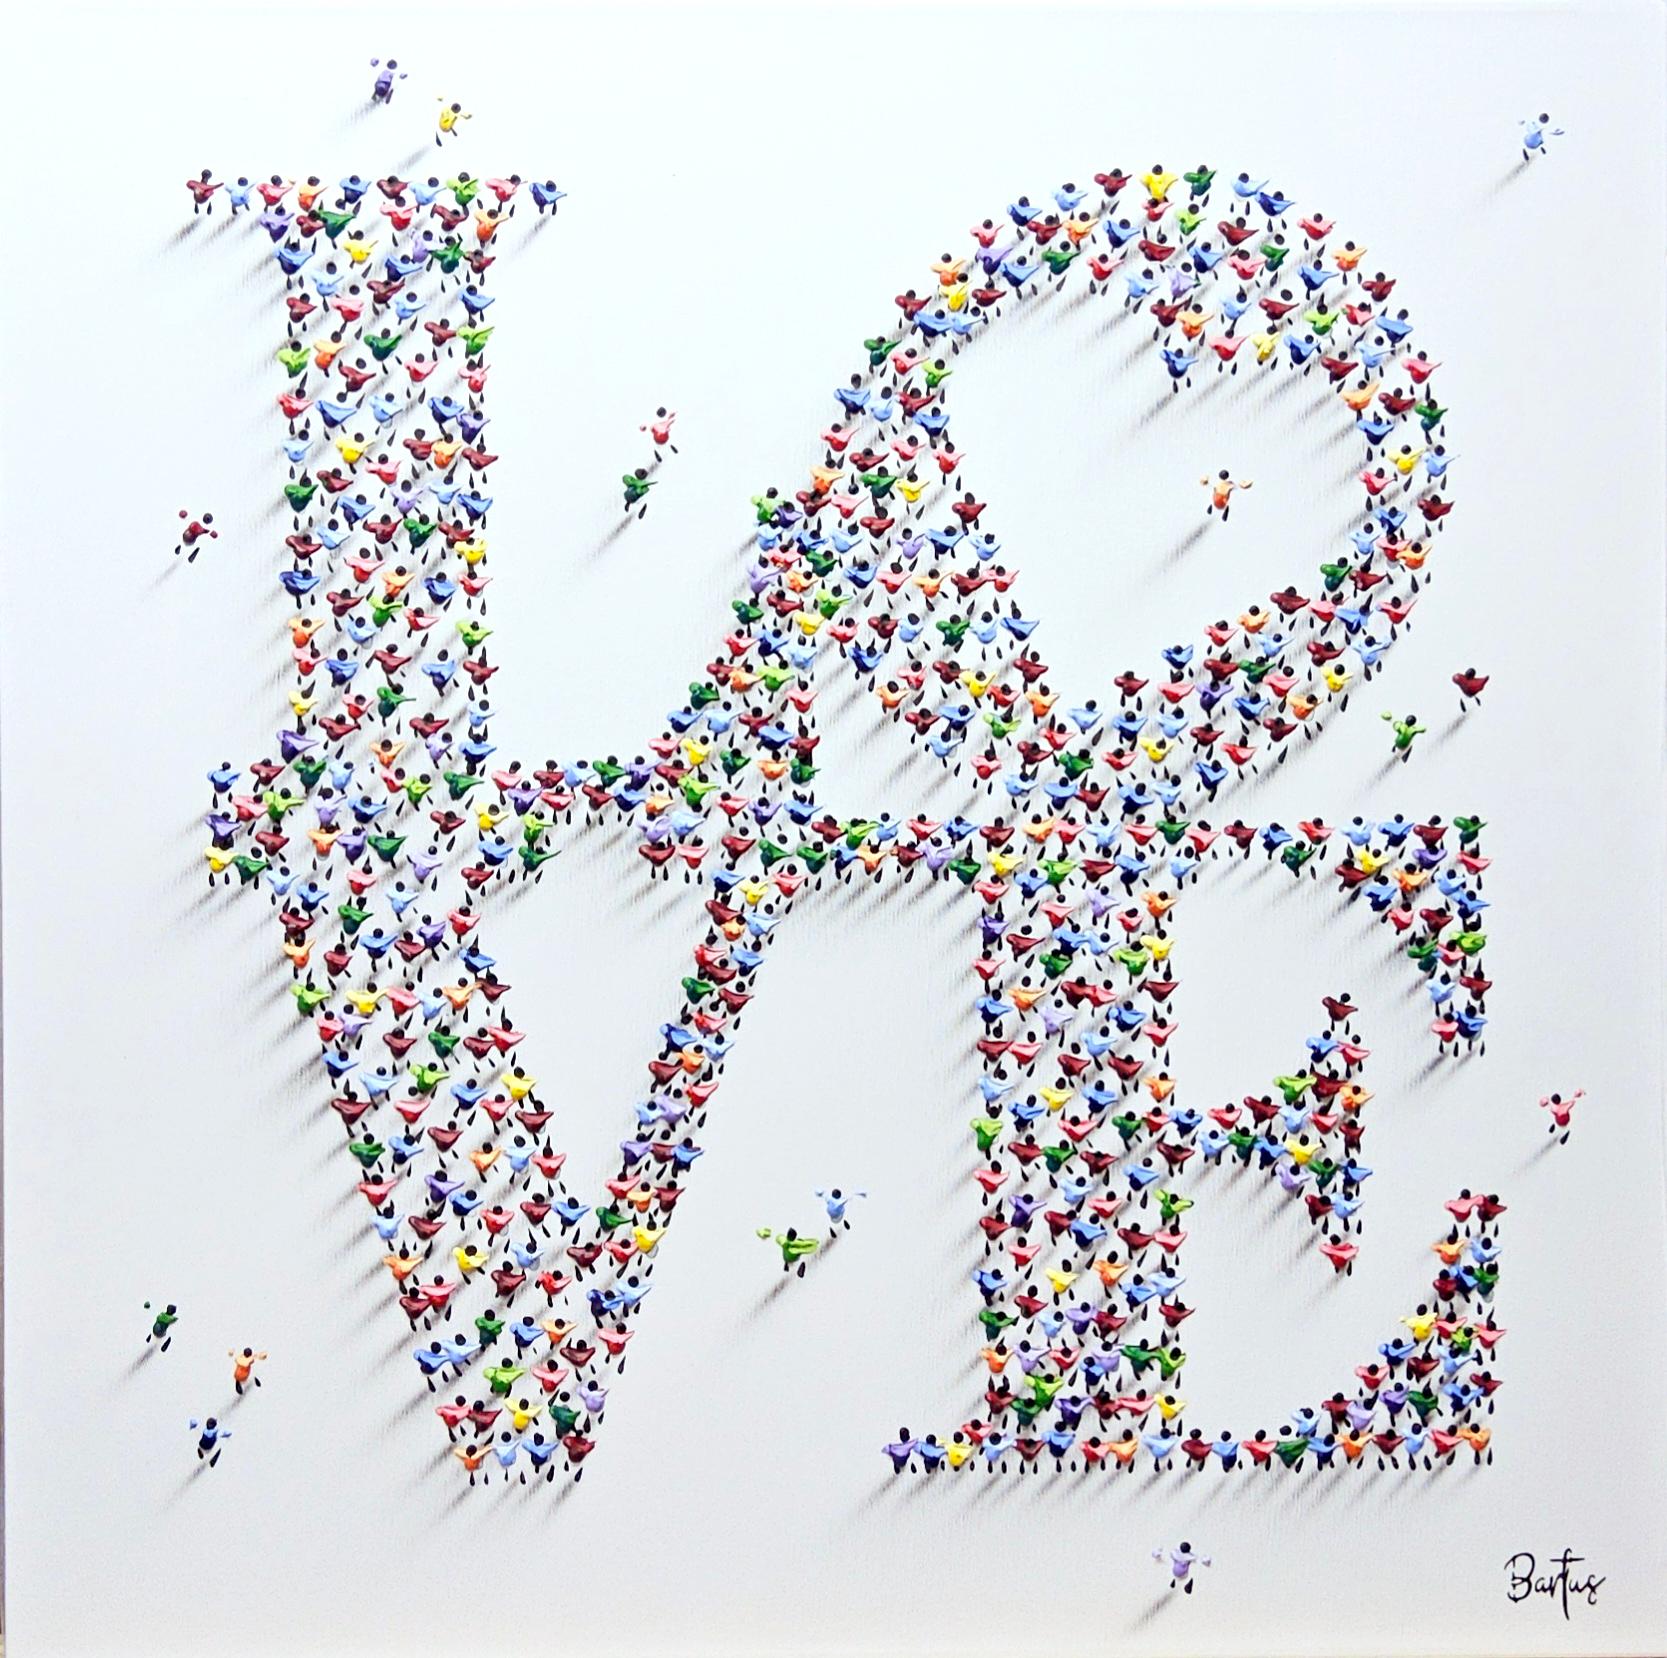 Dieses Stück, "Loving Heart", 32 x 32 gemischte Medien Malerei auf Leinwand von Künstler Francisco Bartus. Das Wort LIEBE ist als Quadrat gestapelt und besteht aus einzelnen Farbklecksen, die strategisch so platziert und geformt sind, dass der